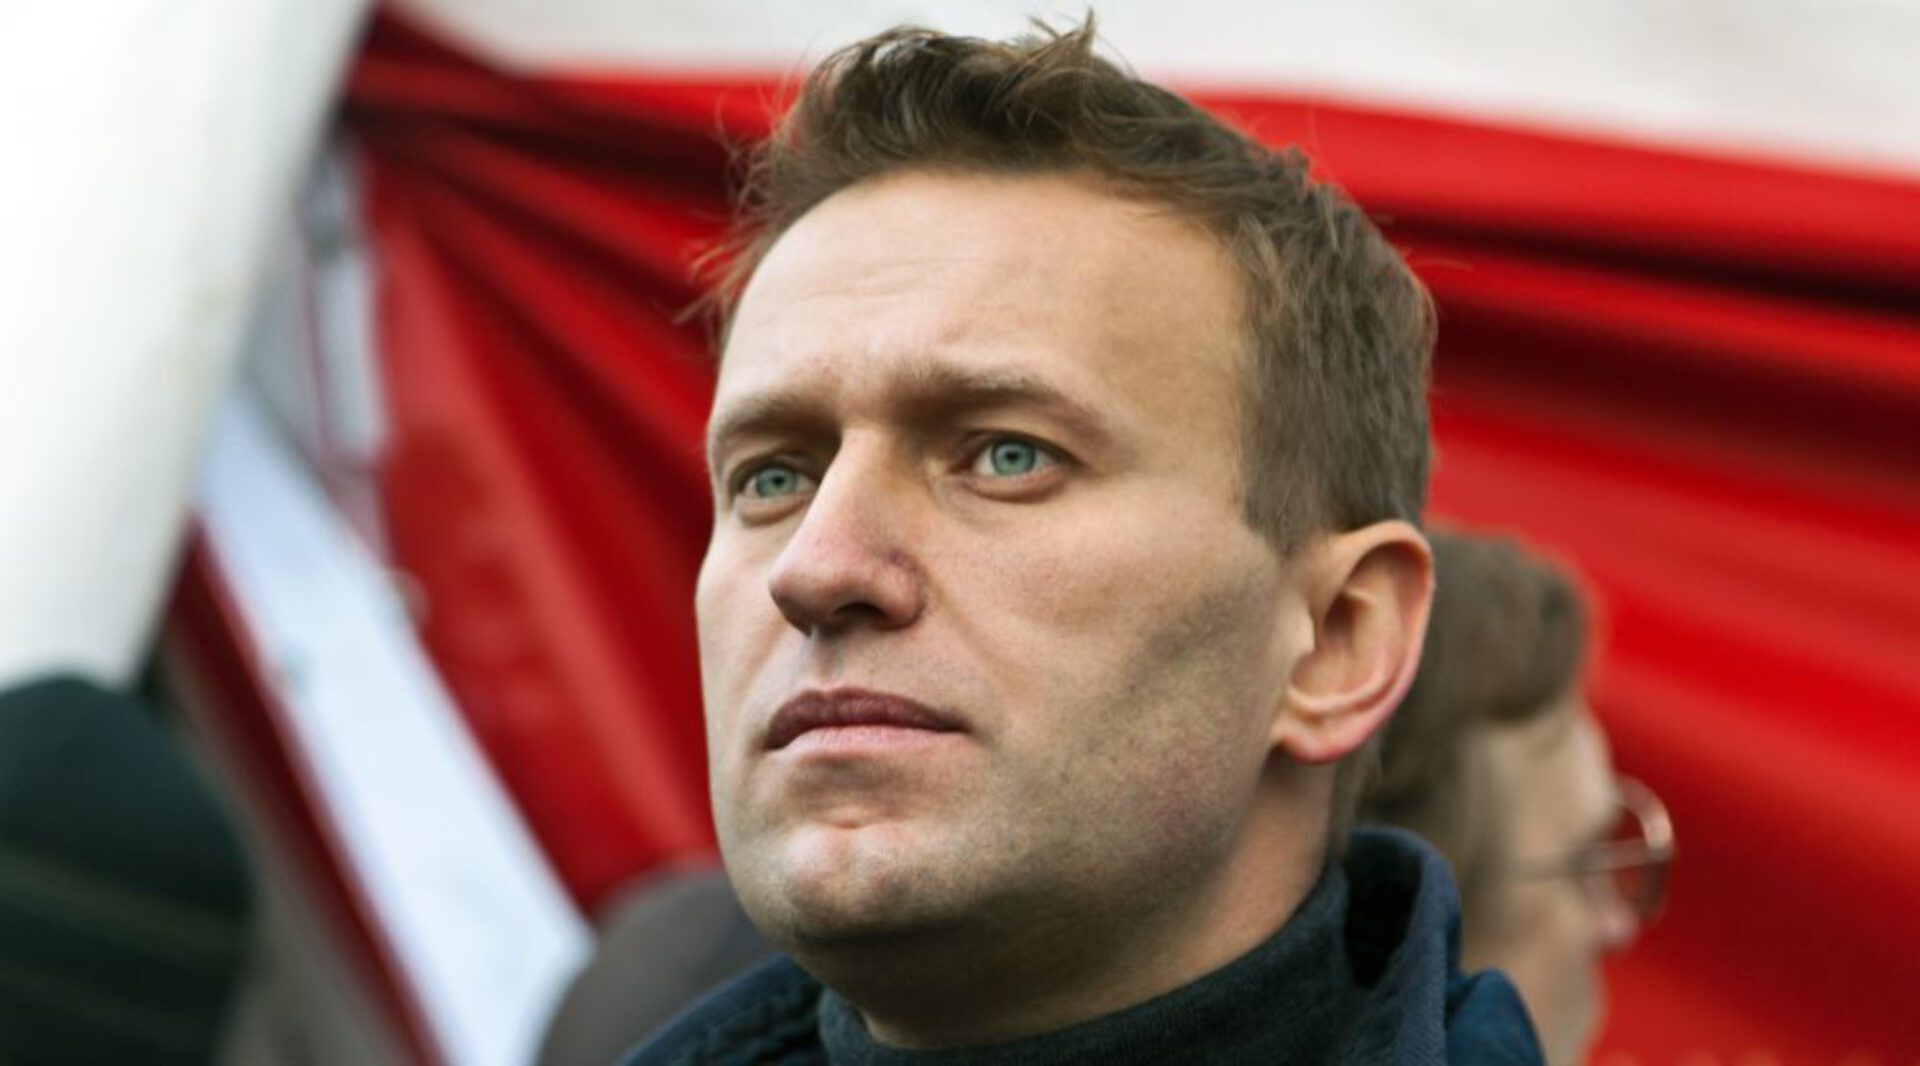 De dood van Aleksej Navalny: analyse van zijn geboortehoroscoop en solaar